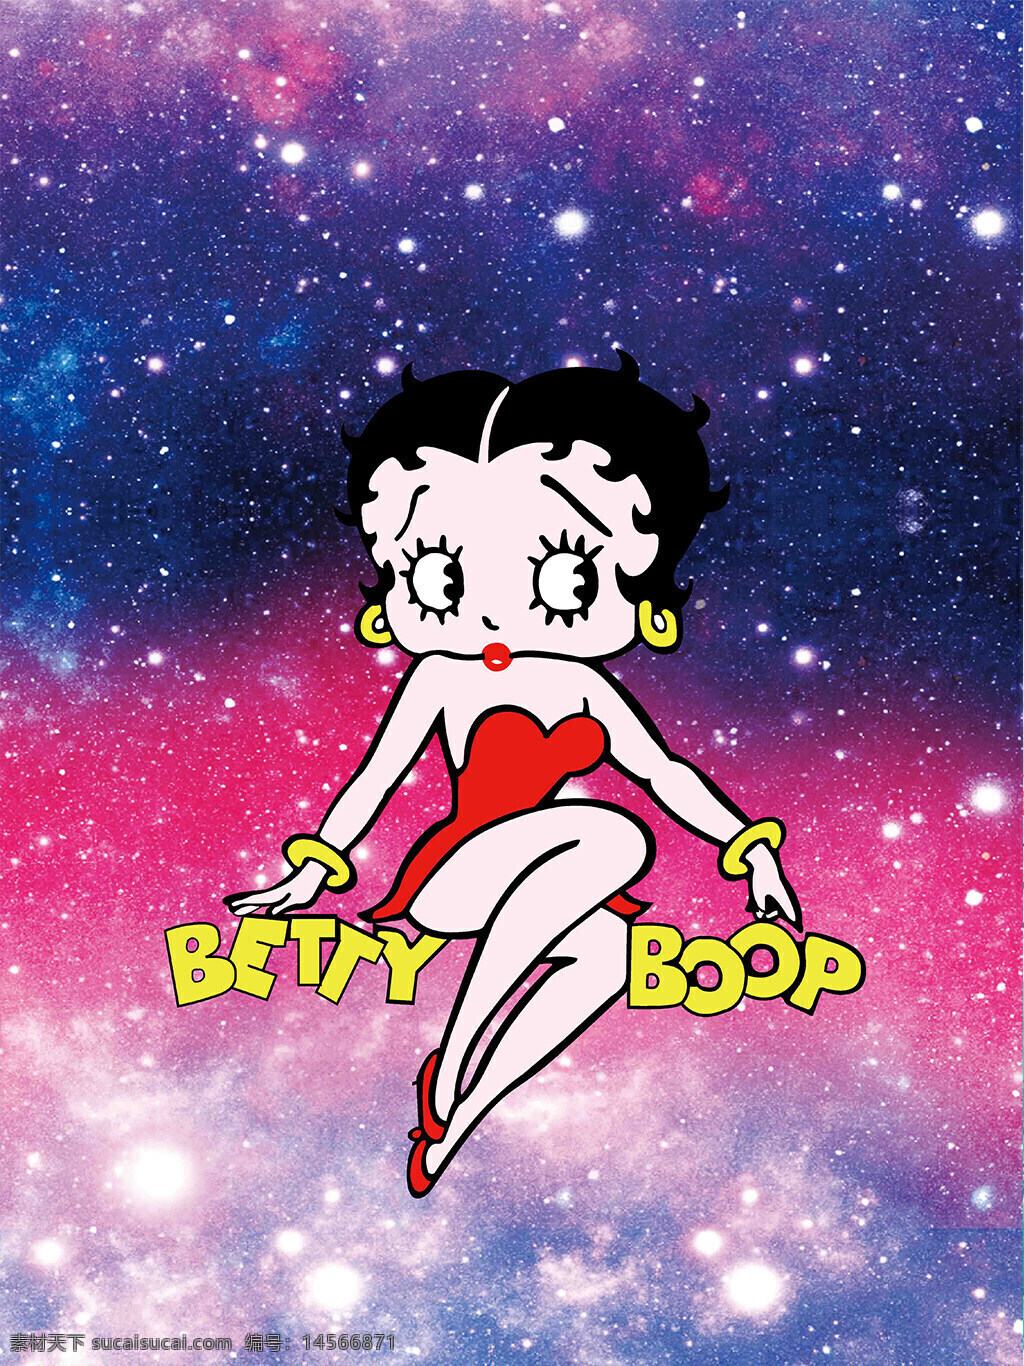 卡通美女装饰背景 卡通美女 装饰背景 星空 宇宙 betty boop